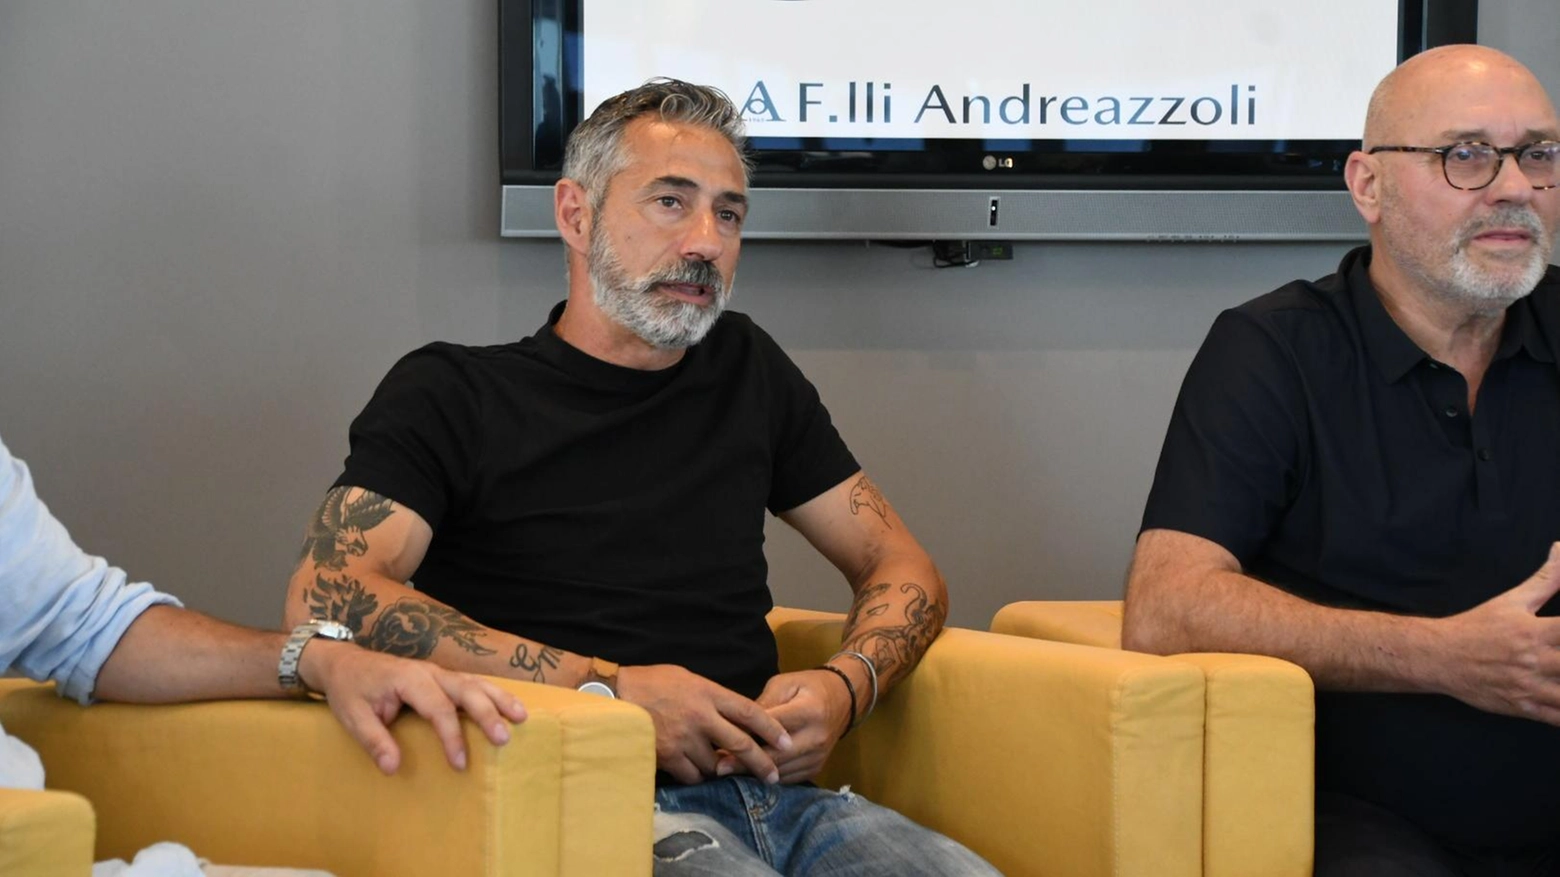 Il tecnico della Massese, Massimiliano Pisciotta, elogia la società per il lavoro svolto e la ricerca di giocatori motivati. Programmate amichevoli per preparare la squadra.